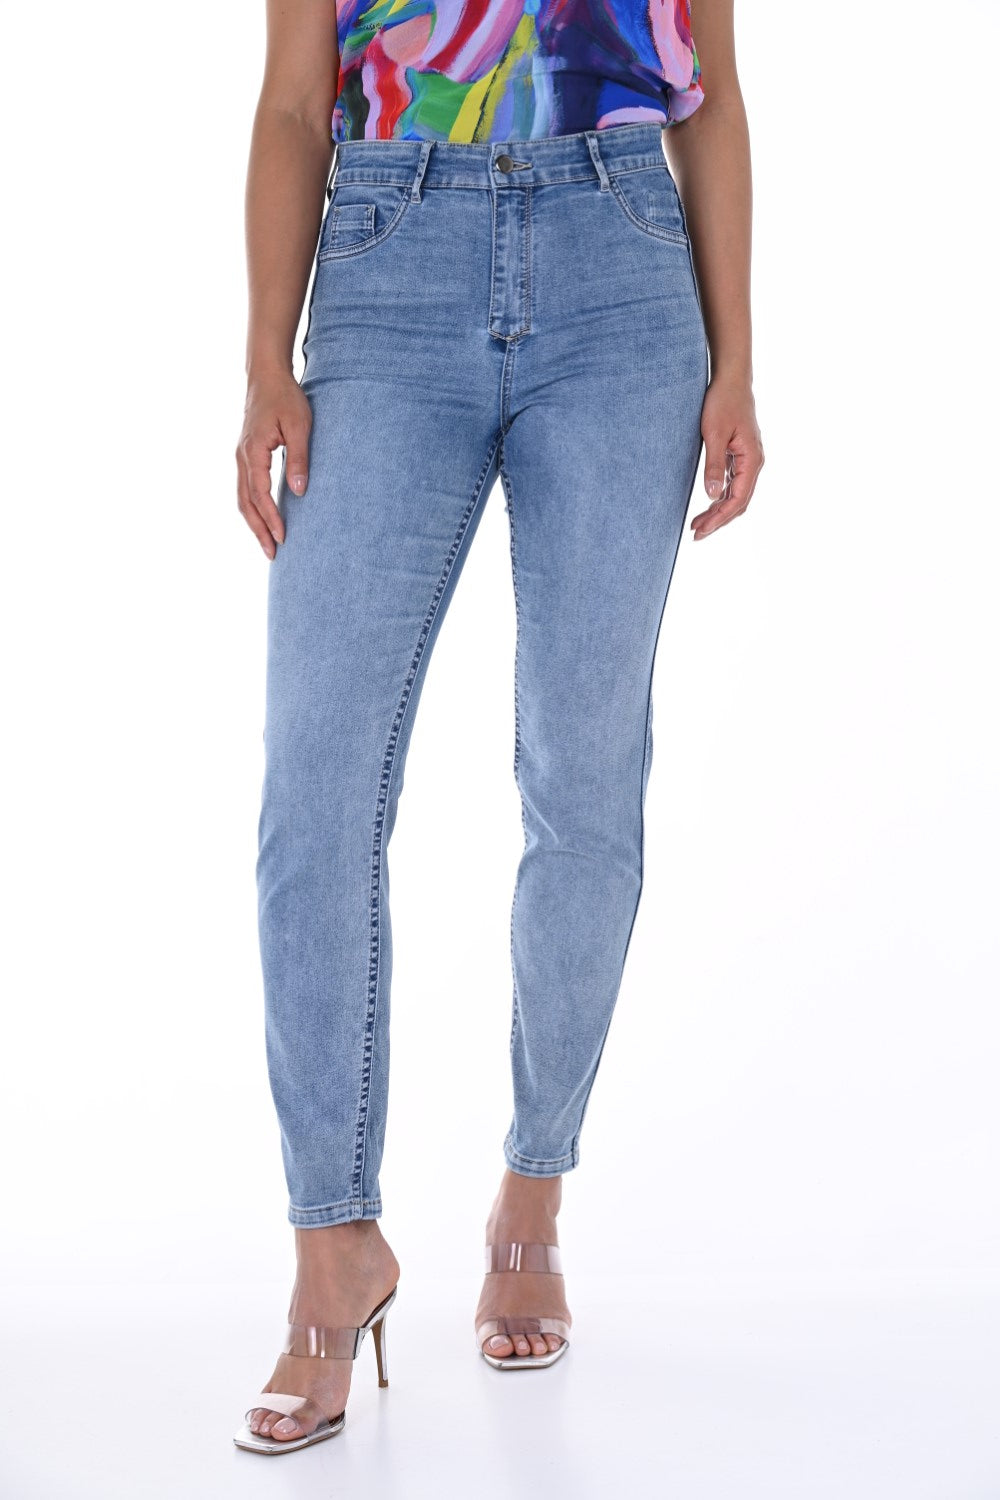 Frank Lyman Jeans reversibili 246248U Blu/Rosa